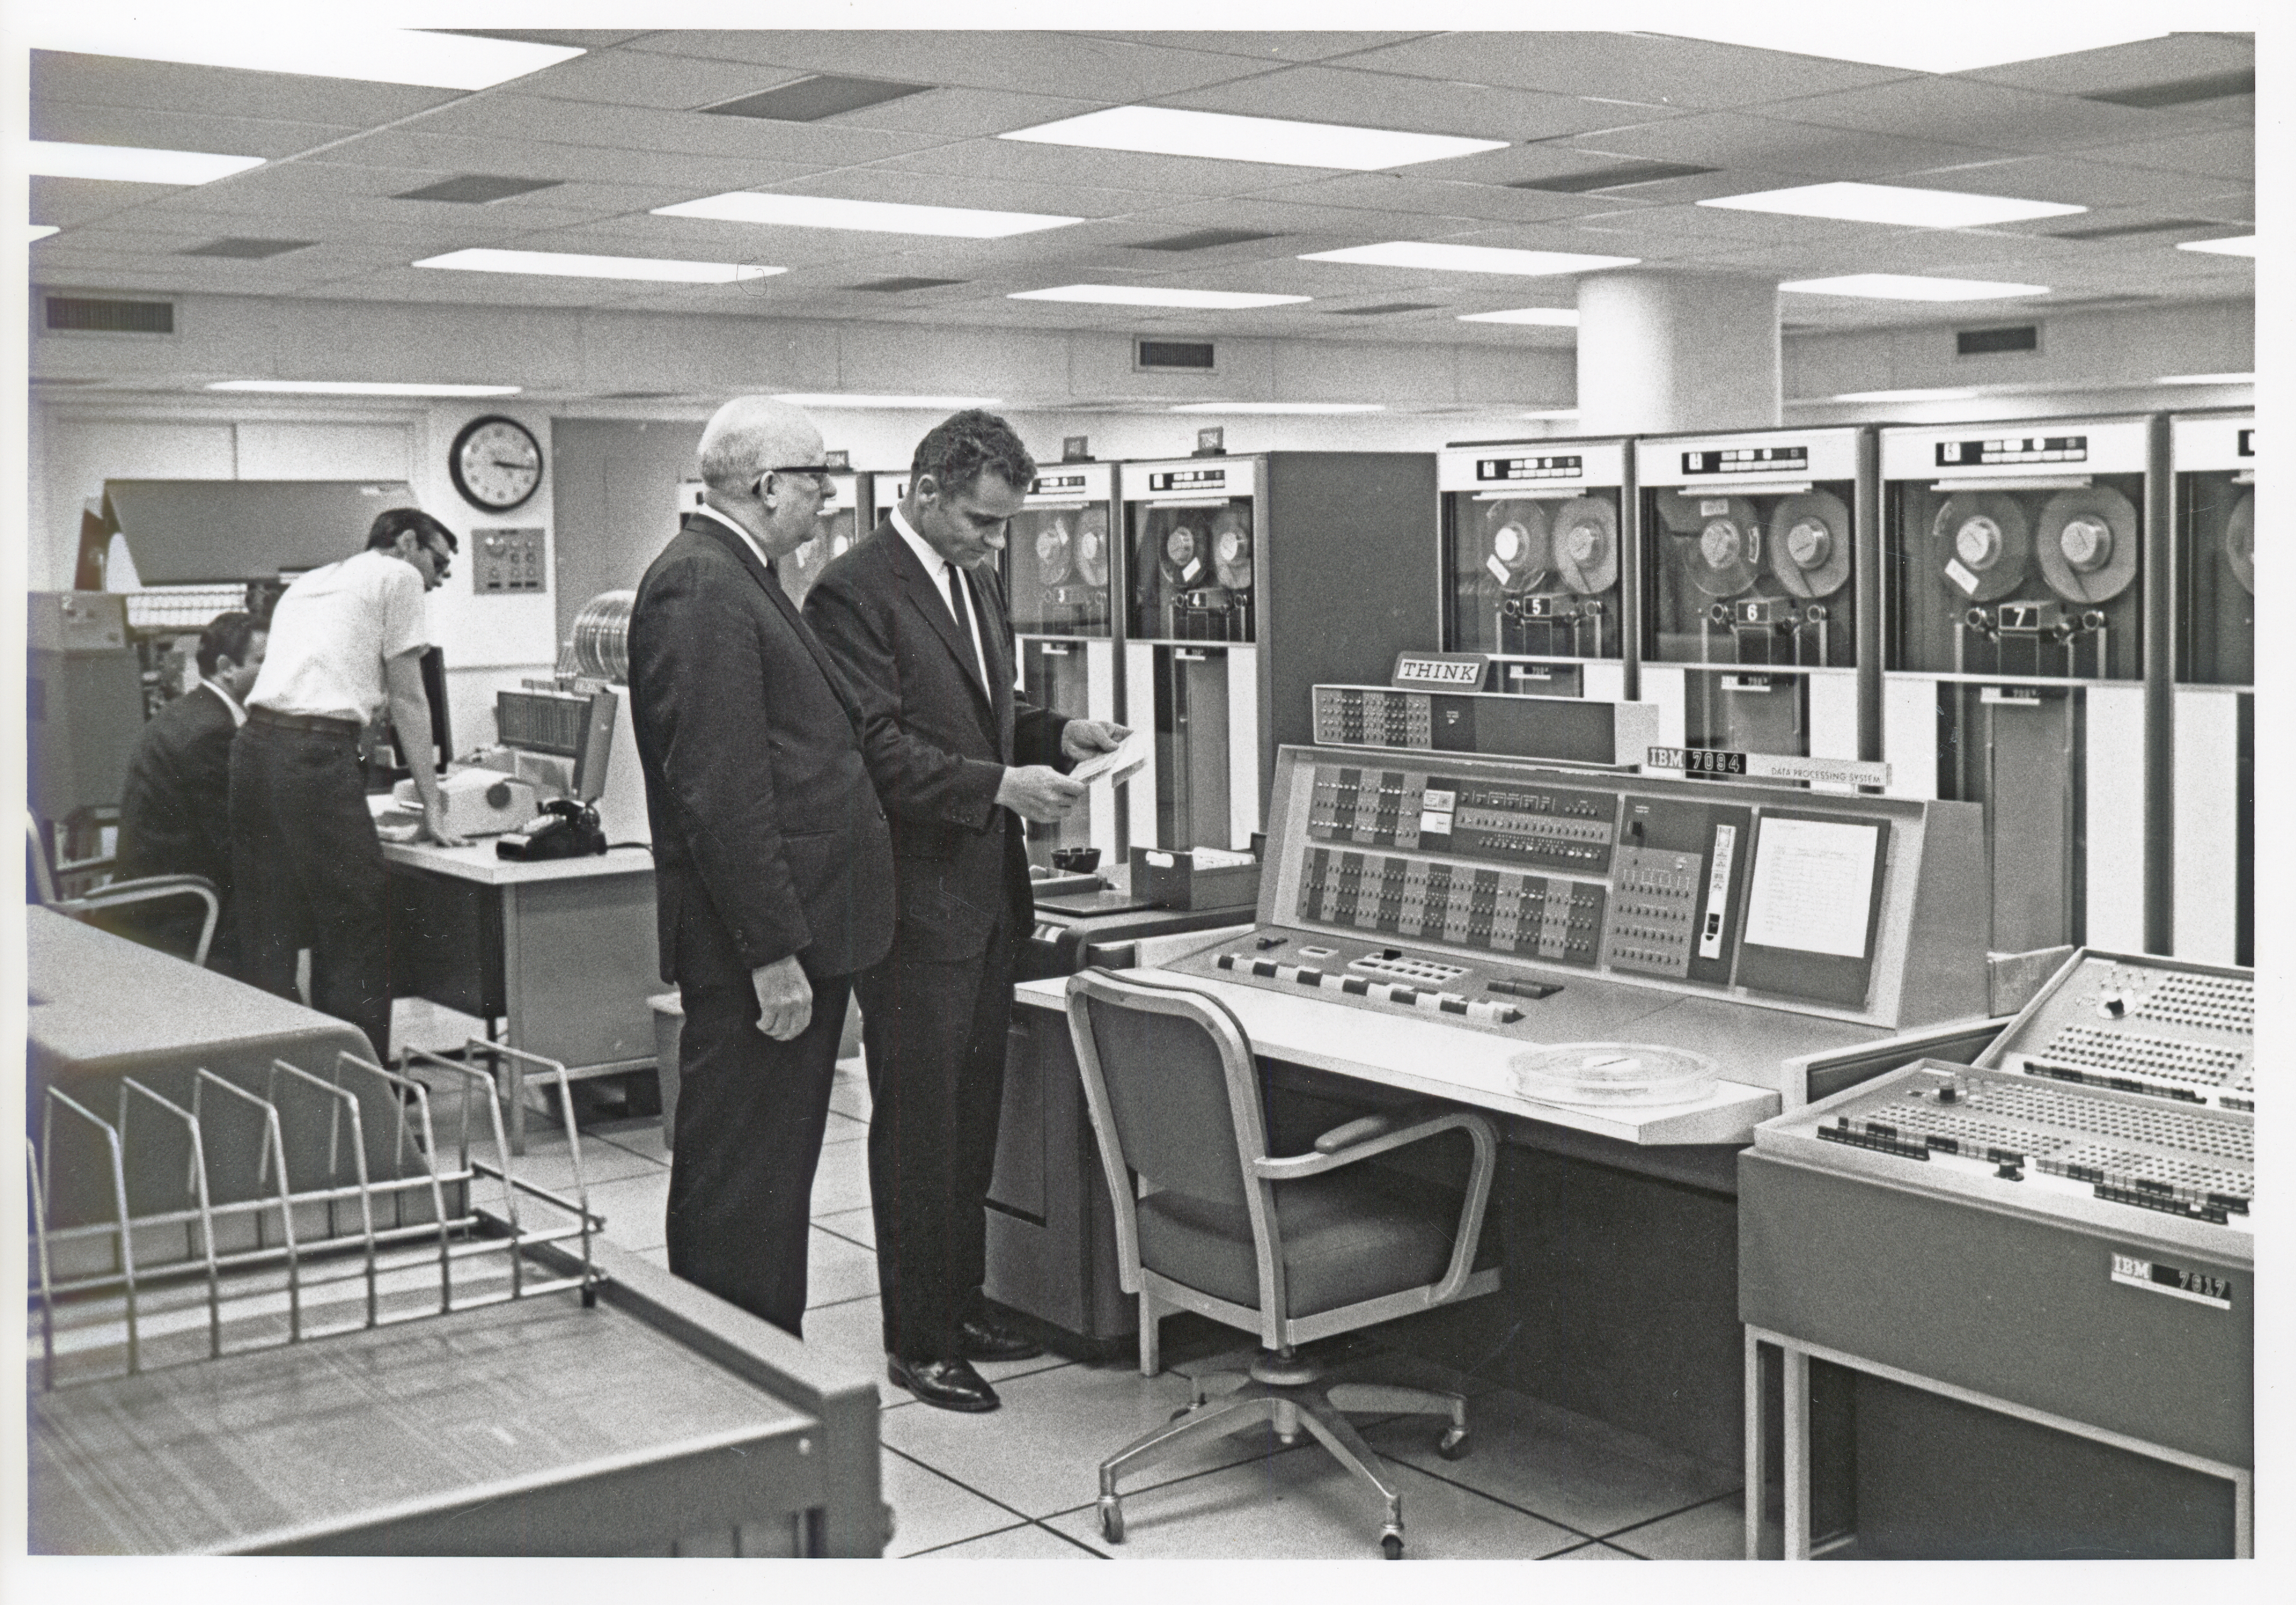 The Medical Center's IBM 7904 mainframe computer system, circa 1969.